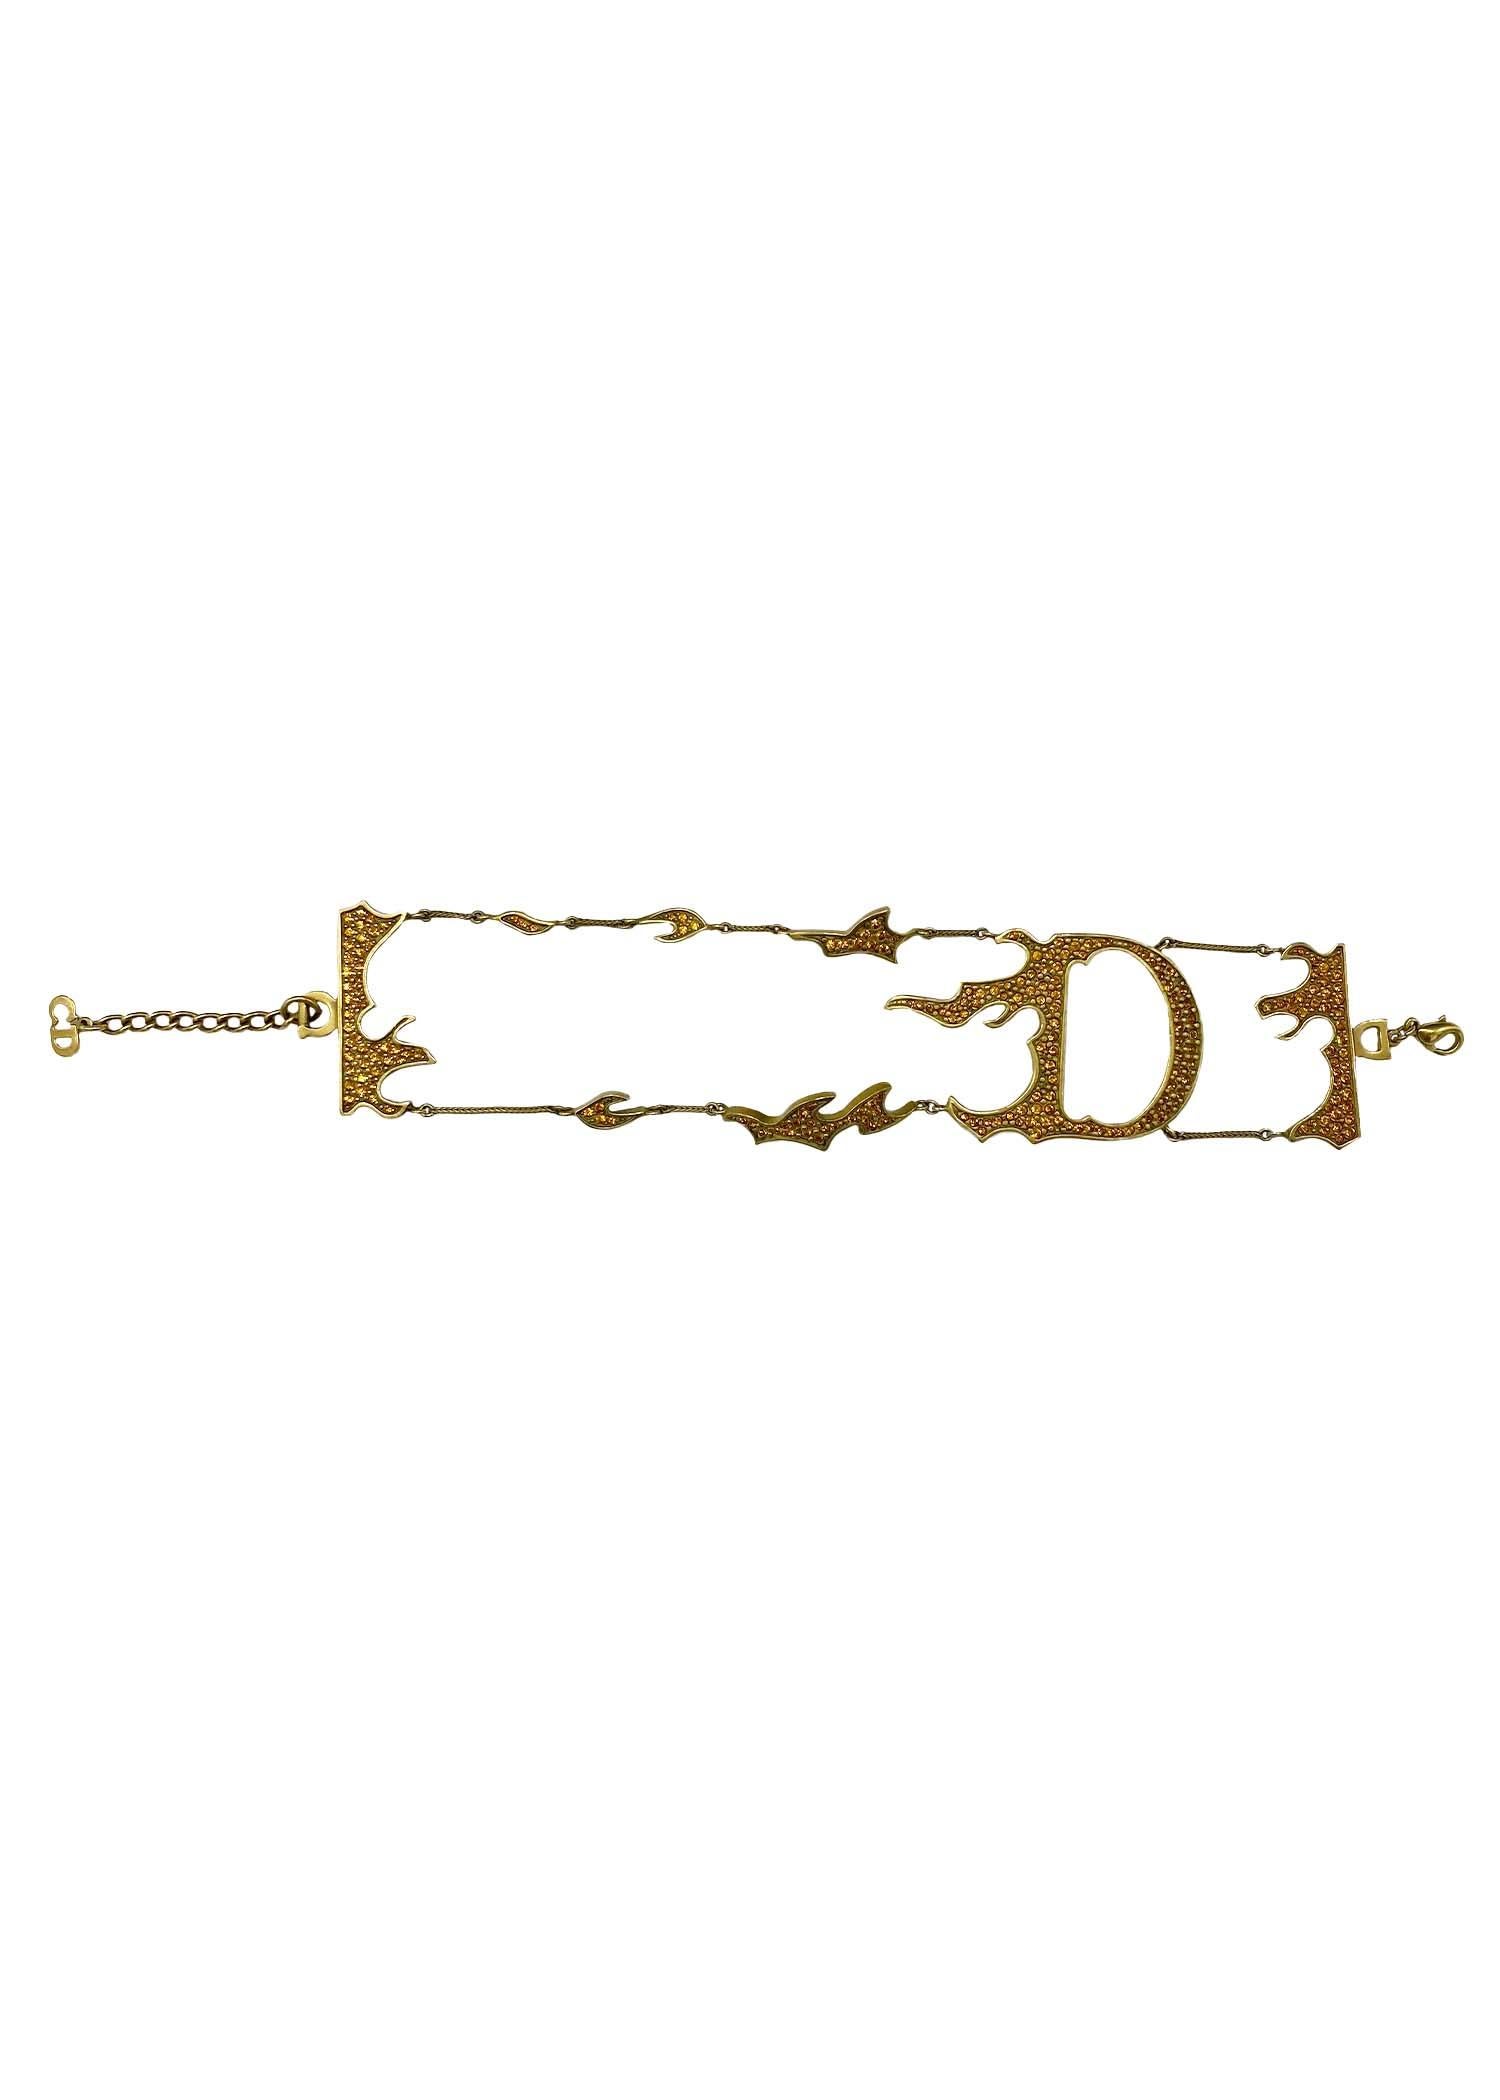 Christian Dior Runway Armreif Armband by John Galliano Logo transparent Acryl Herzen Herz Plexi weiss Schmuck Armschmuck Armreifen Orig 